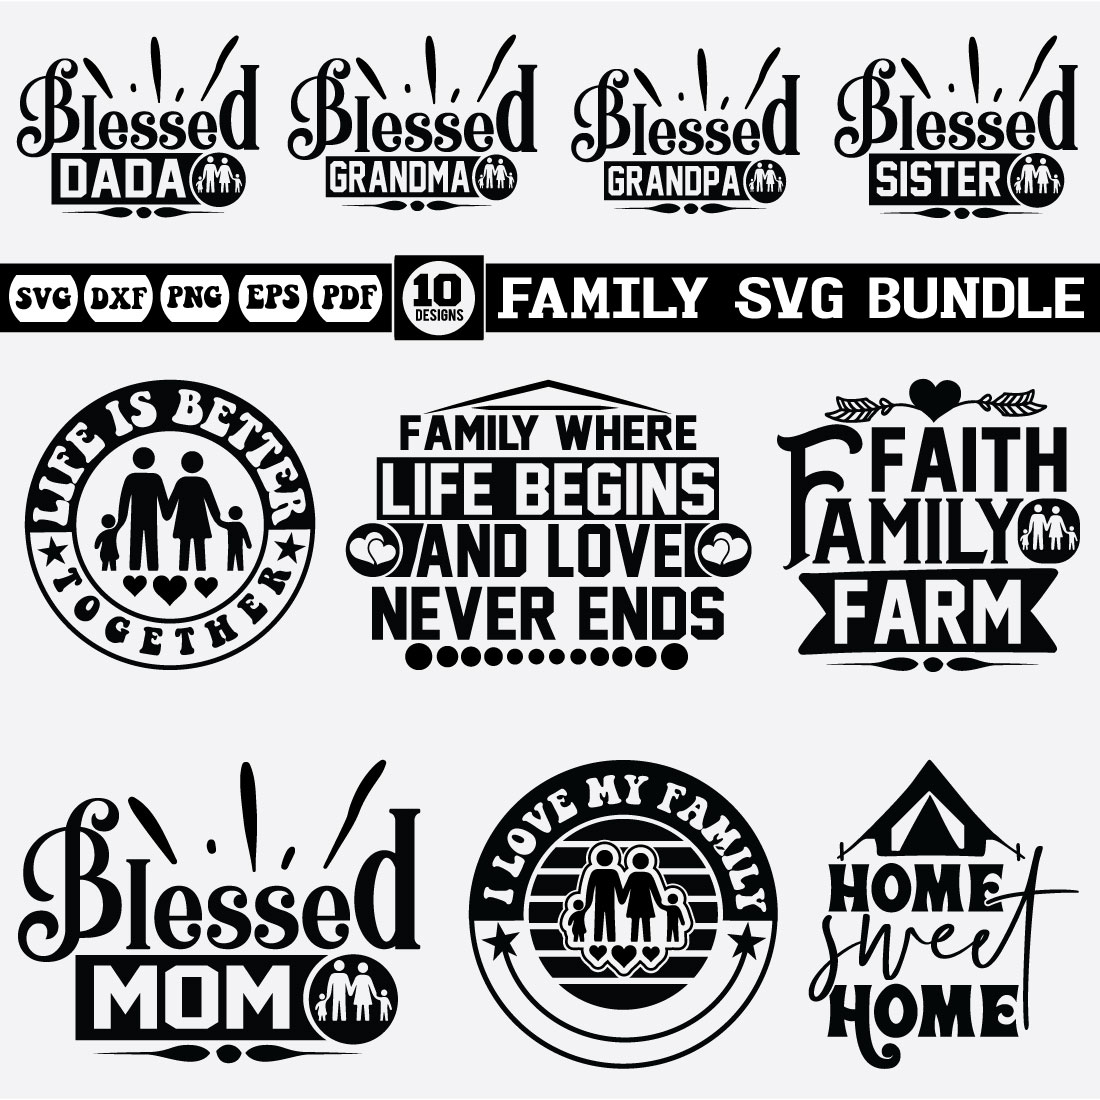 family svg design bundle cover image.